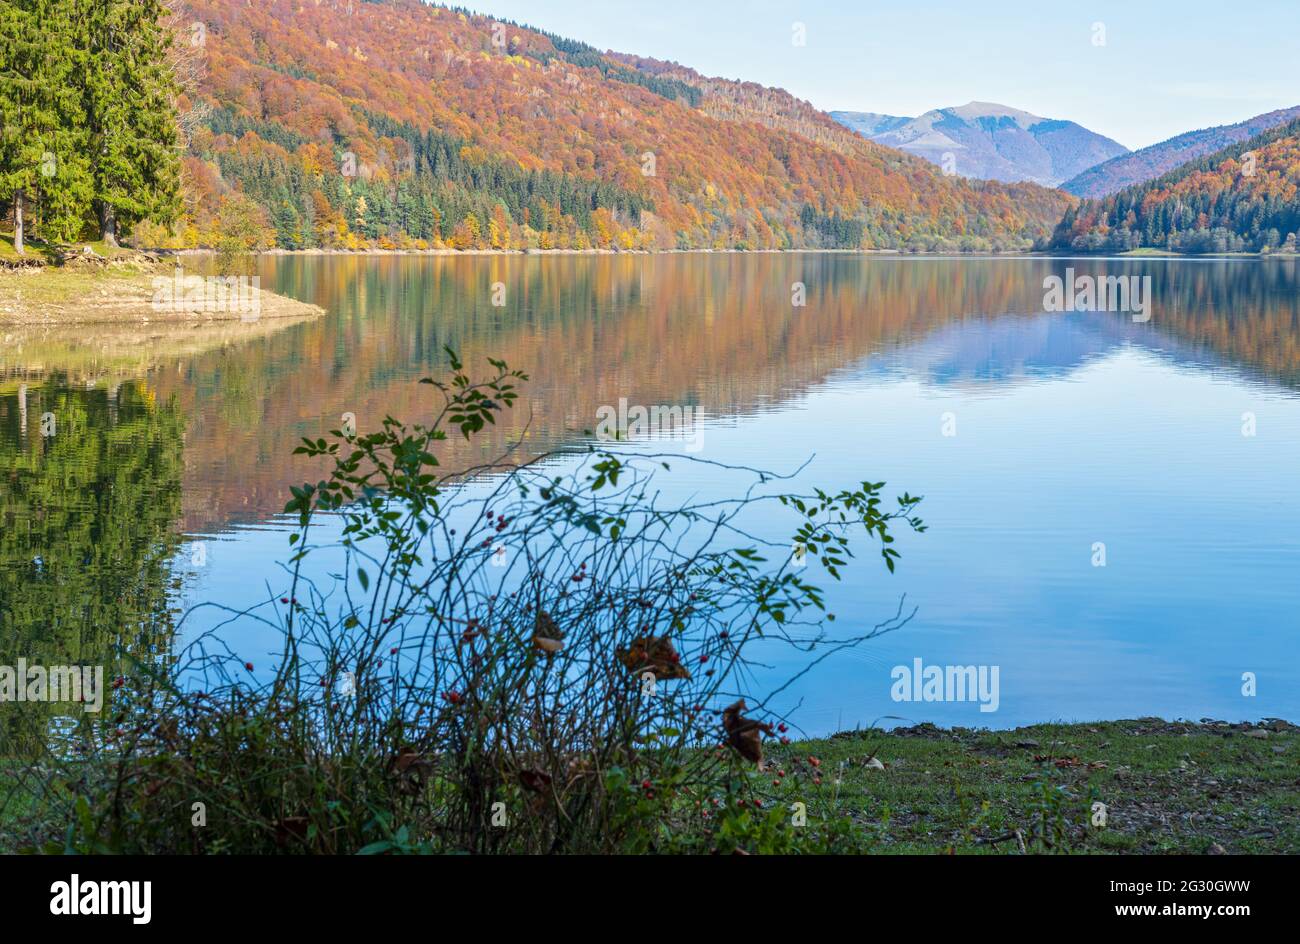 Vilshany Wasserreservoir am Tereblya Fluss, Transkarpatien, Ukraine. Malerischer See mit Wolken Reflexion. Schöner Herbsttag in Karpaten M Stockfoto